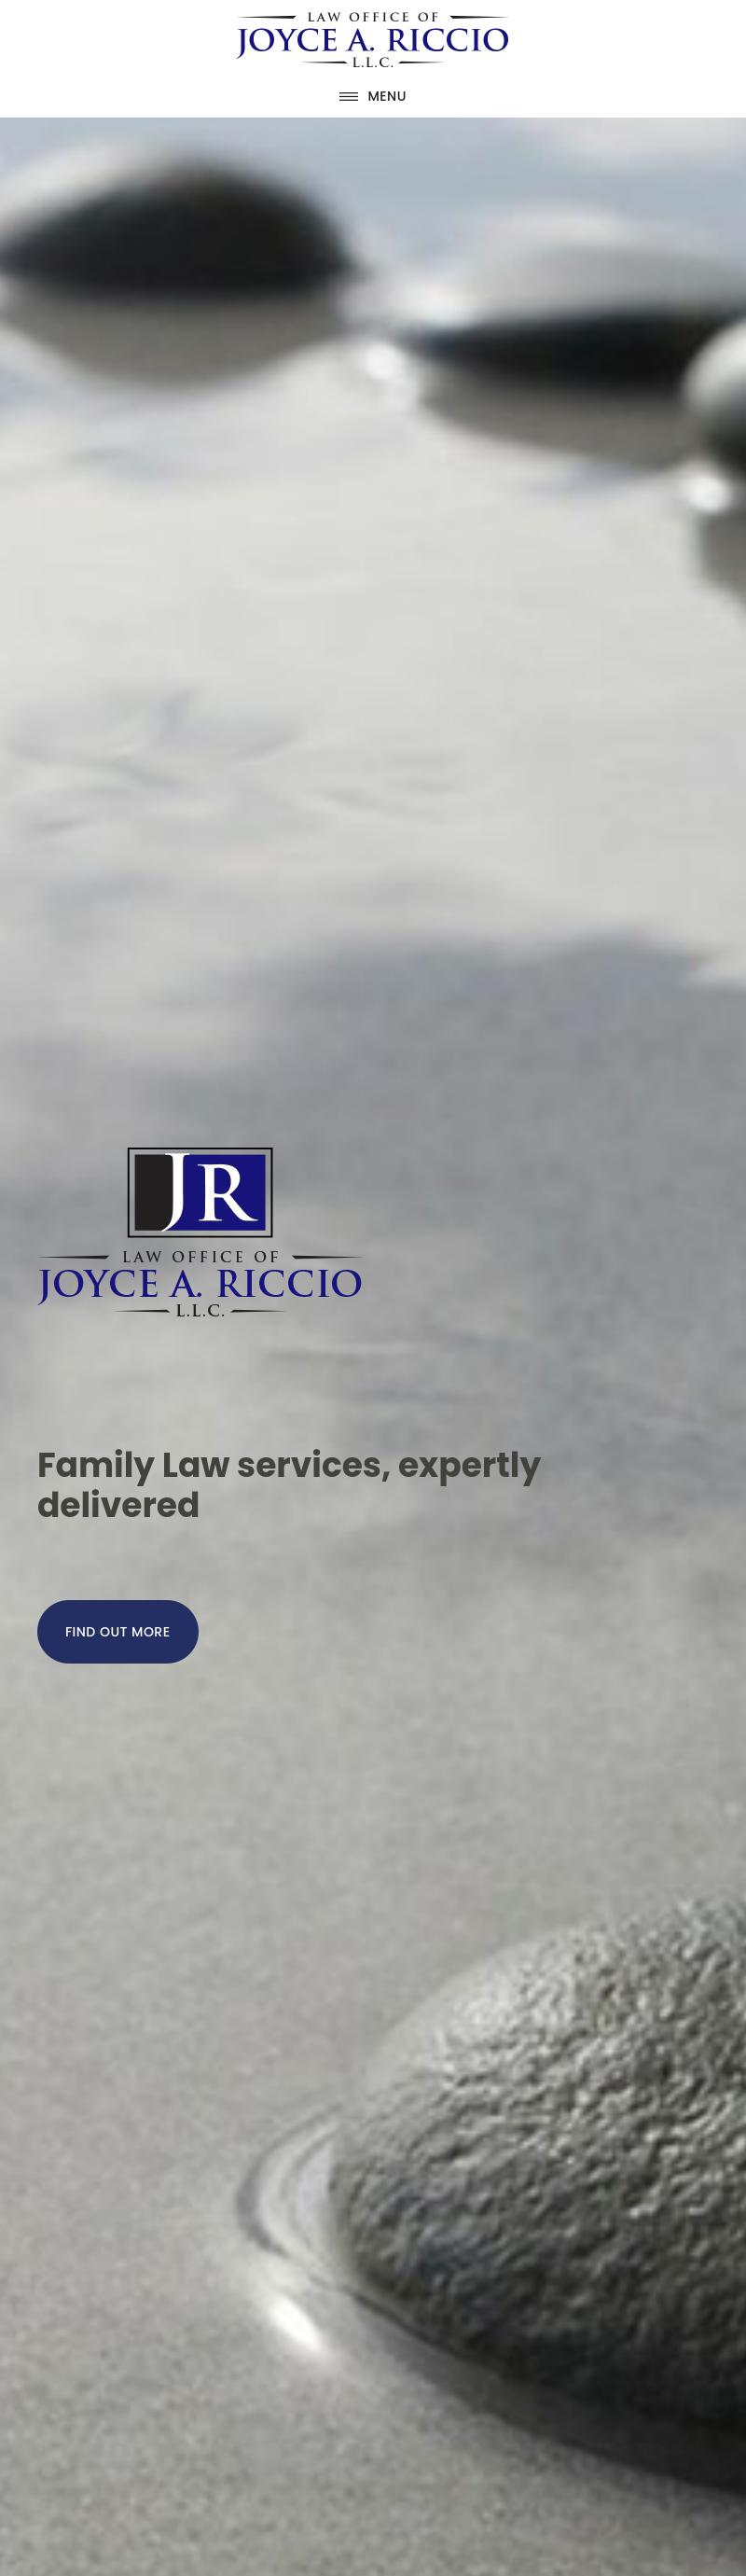 Riccio Joyce A - Fairfield CT Lawyers